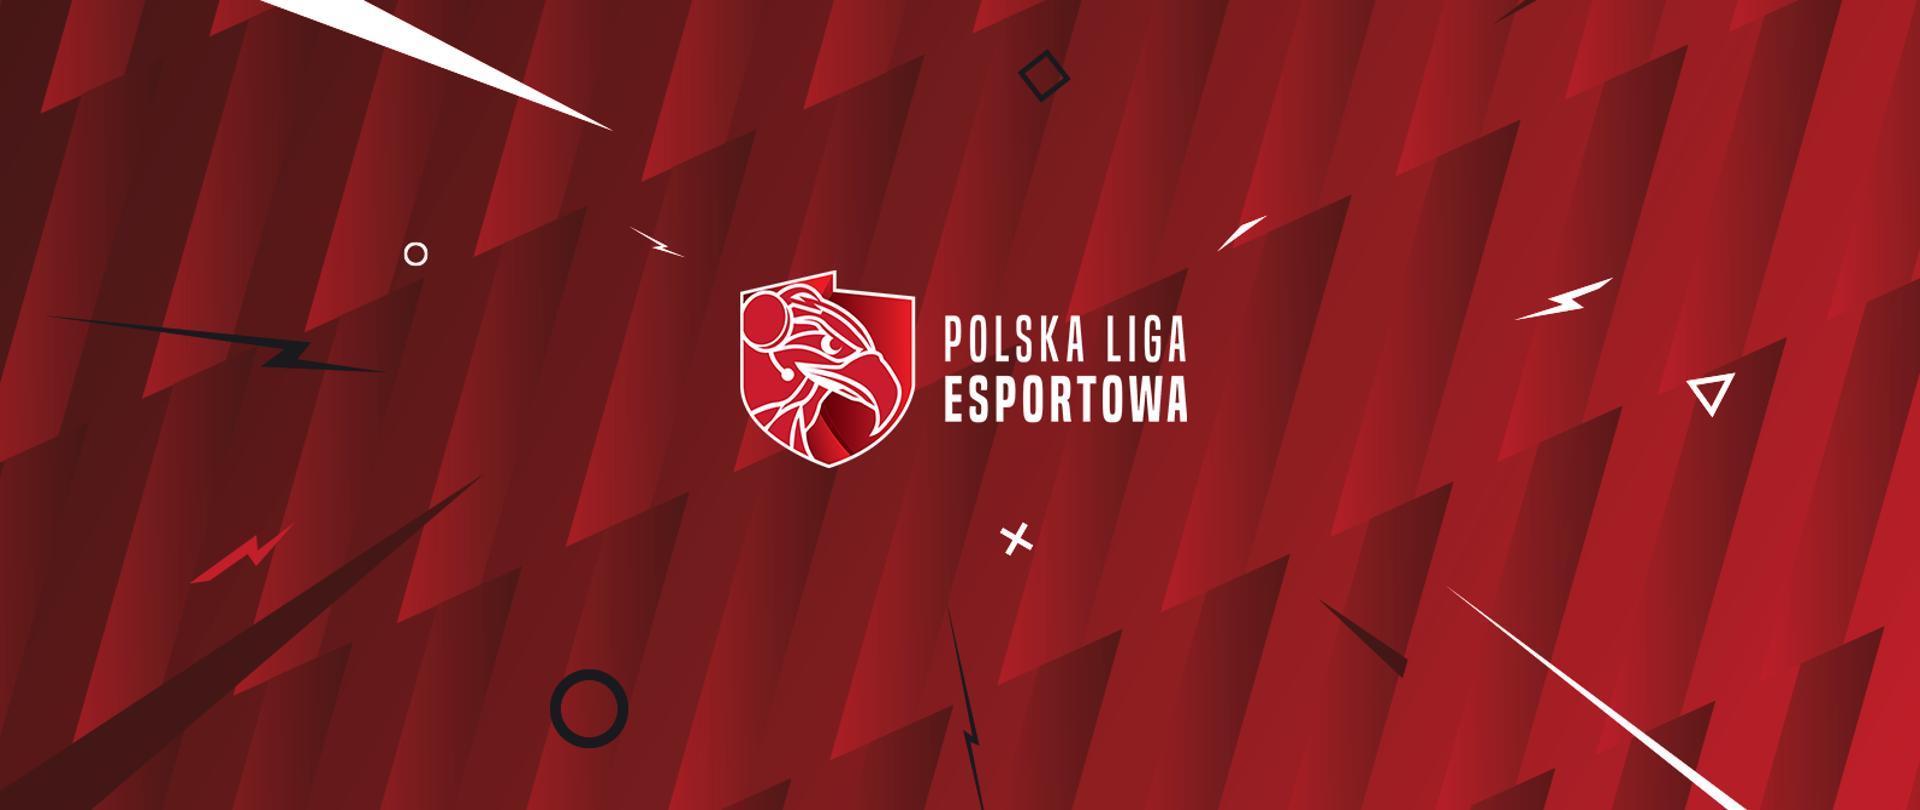 Grafika z napisem "Polska Liga Esportowa" oraz herbem, na którym znajduje się obrys głowy orła